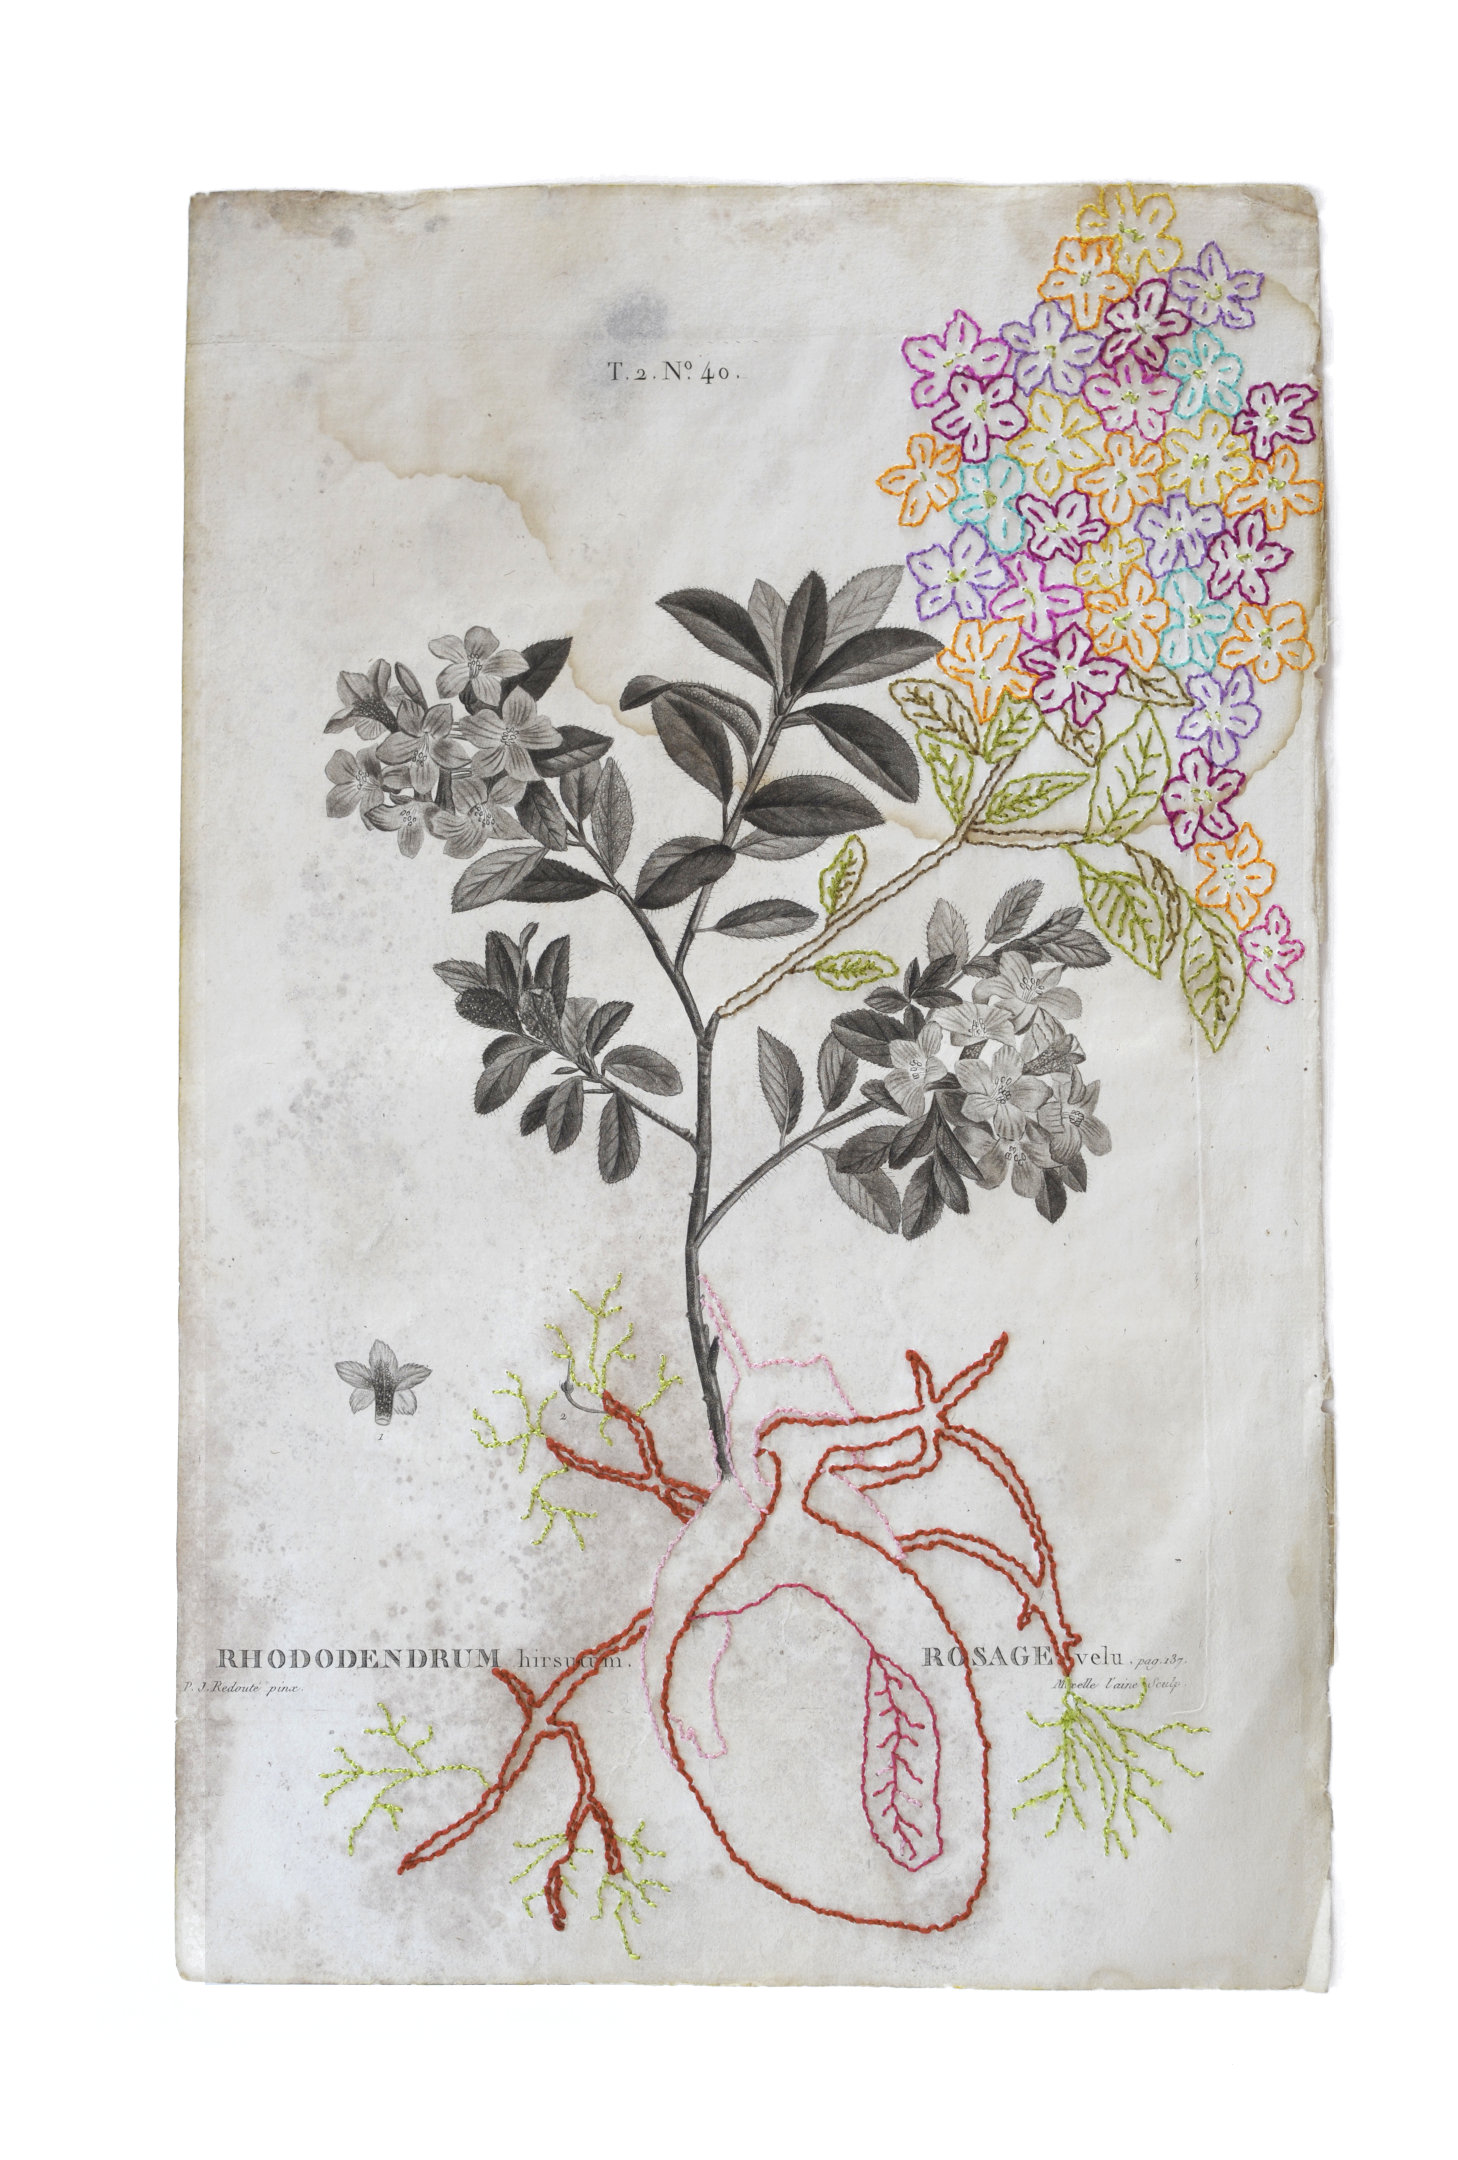 Coeur rouge brodé en tubercule d'un Rhododendrum hirsutum - Rosage velu sur une gravure botanique ancienne